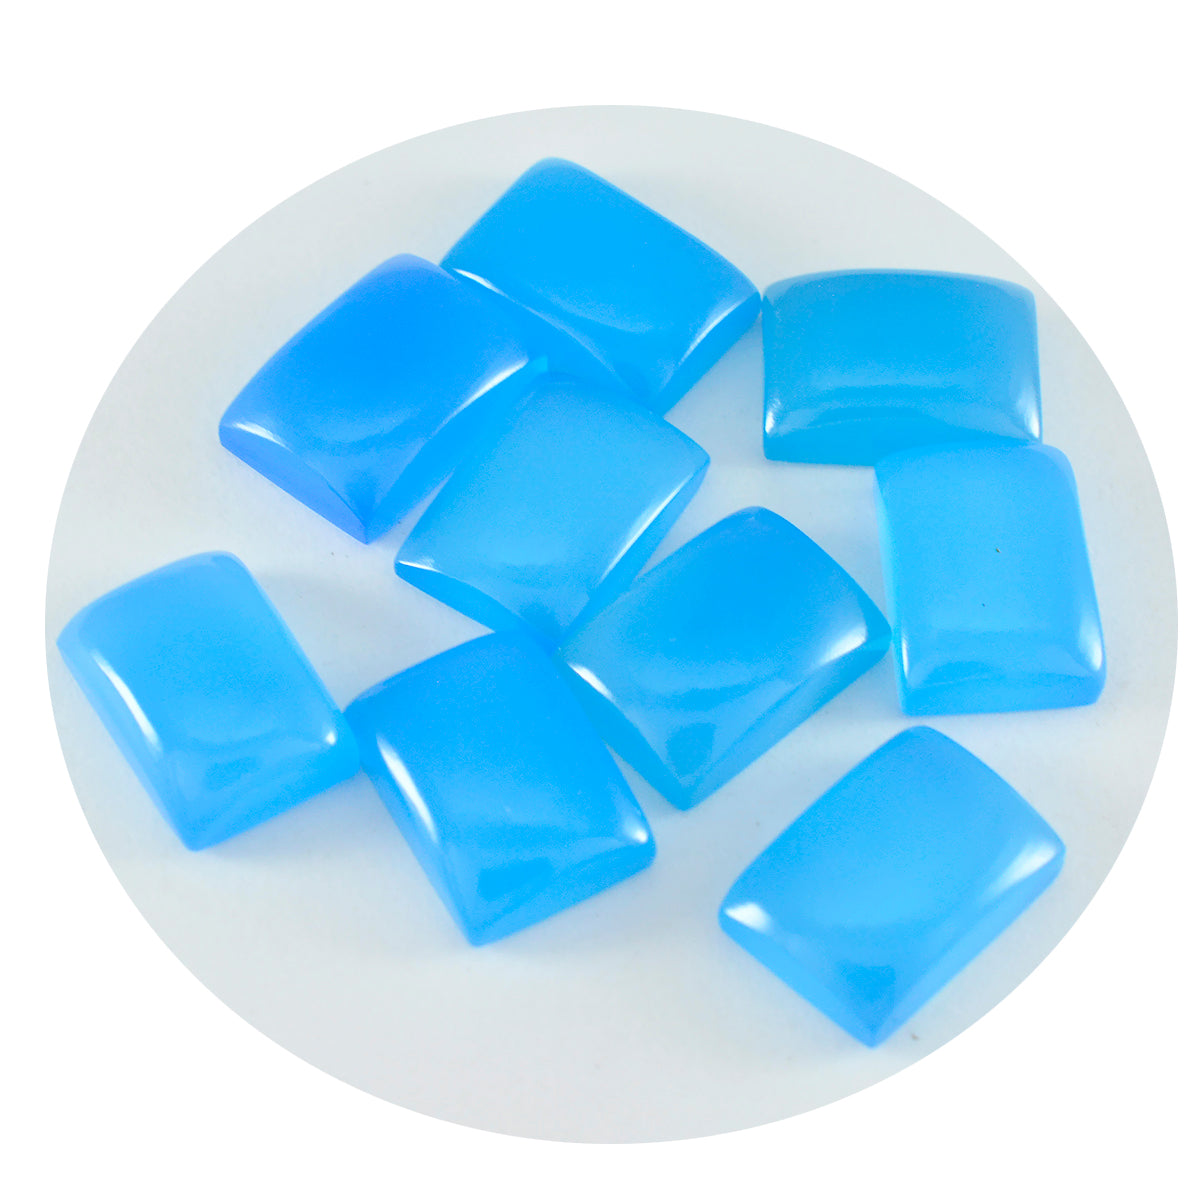 riyogems 1 шт., синий халцедон, кабошон 8x10 мм, восьмиугольная форма, привлекательное качество, свободный драгоценный камень